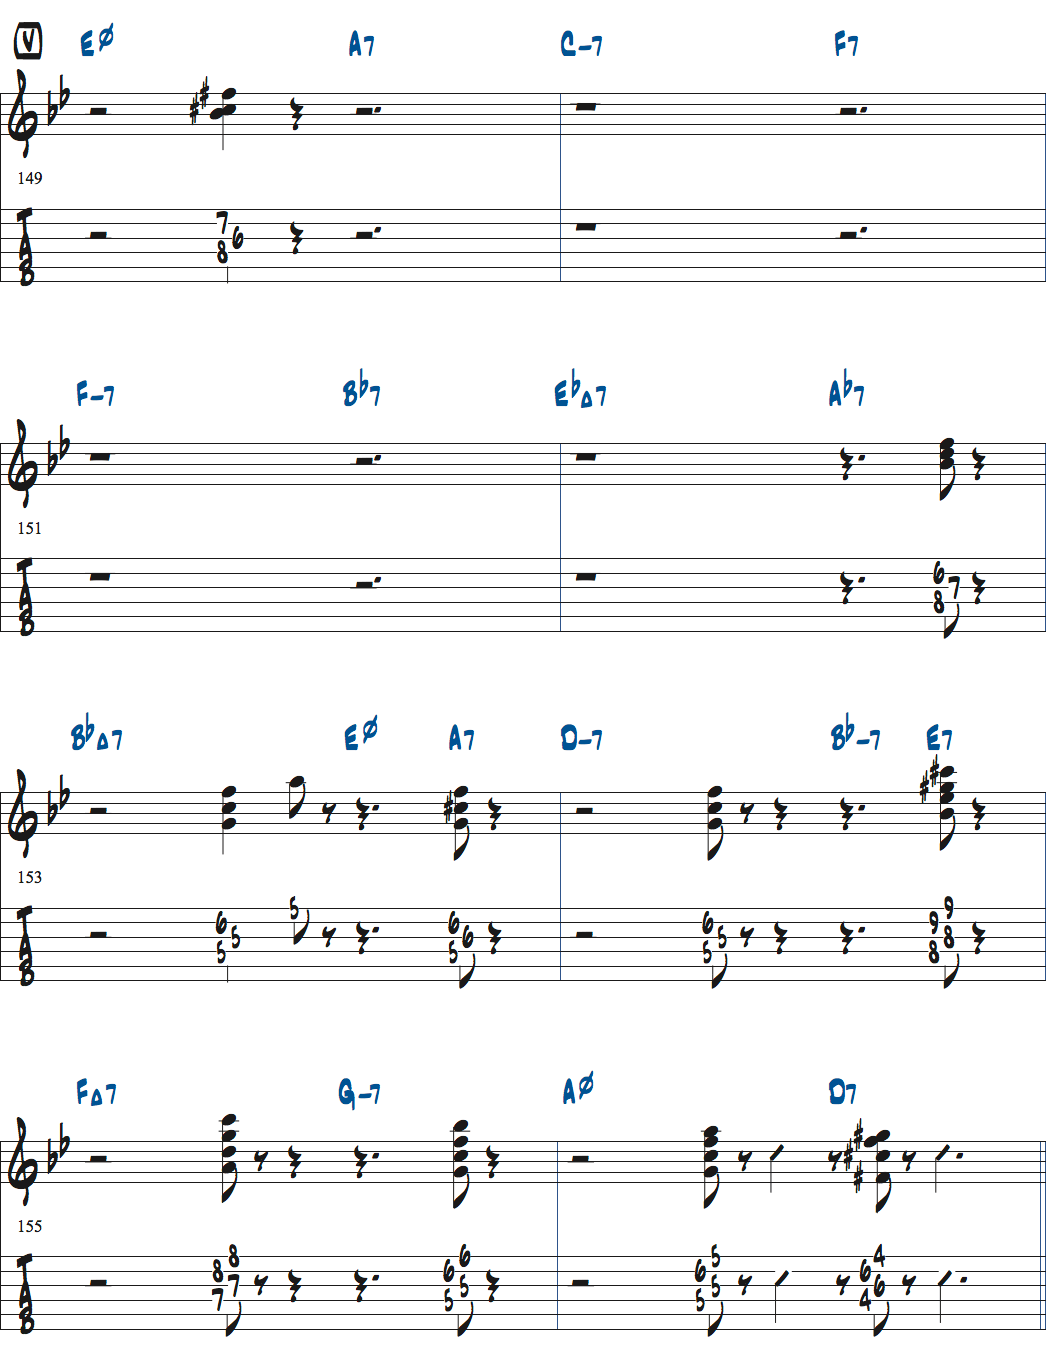 ジョナサン・クライスバーグの星影のステラベースソロのコンピング楽譜ページ5